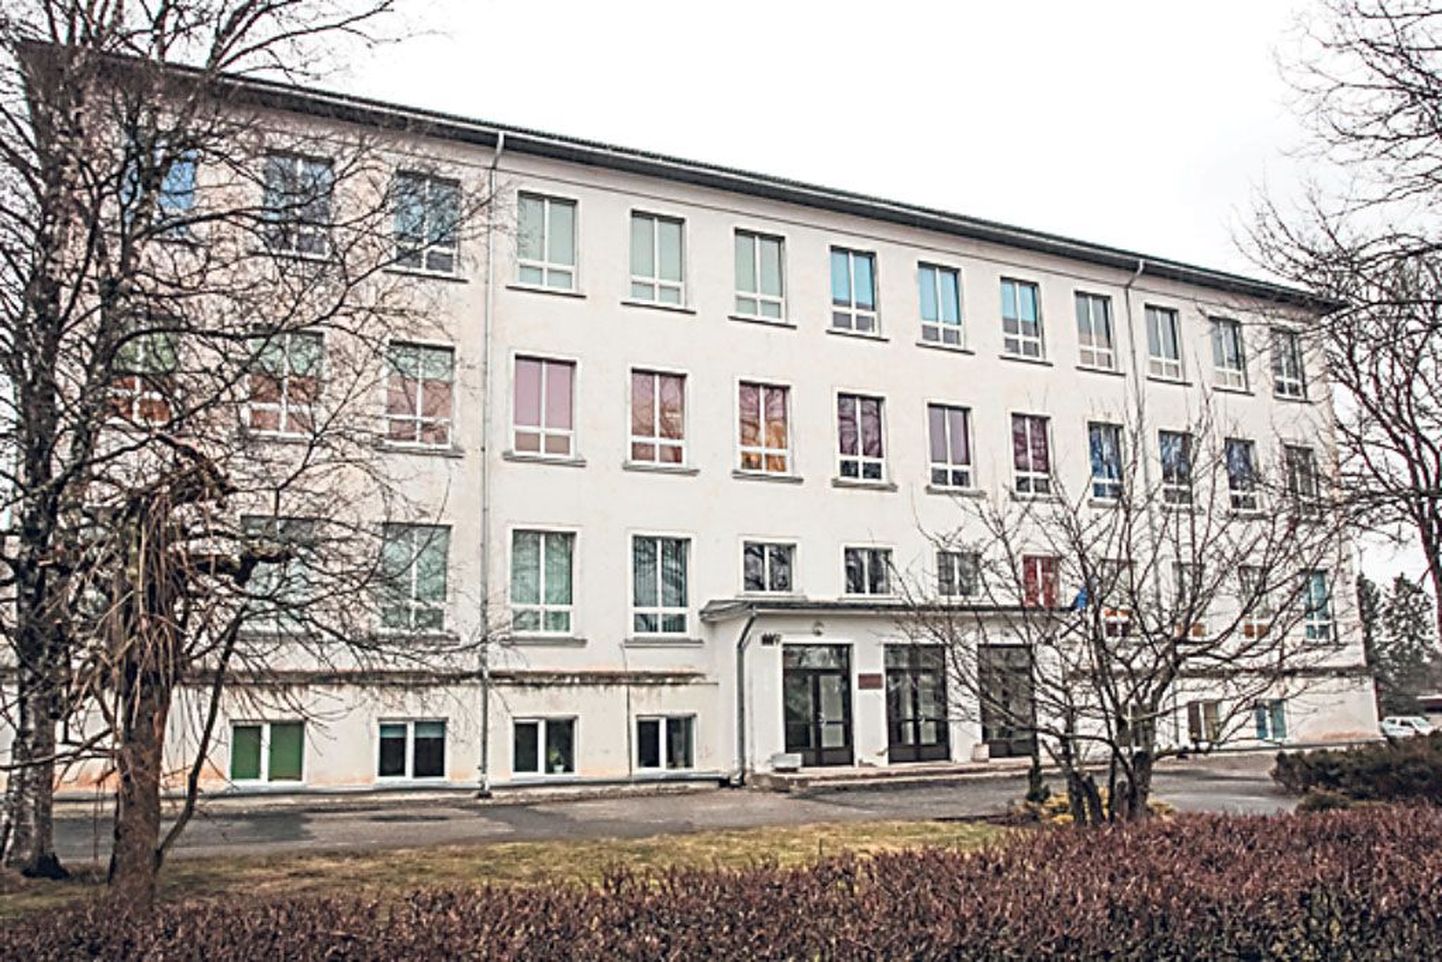 Pärnu-Jaagupi 1960. aastal valminud koolimajale on lisandunud õppetiib ja spordi- ja kultuurikeskus. Põhikooliks kujunemisega jääb peahoones ruumi järjest lahedamalt.